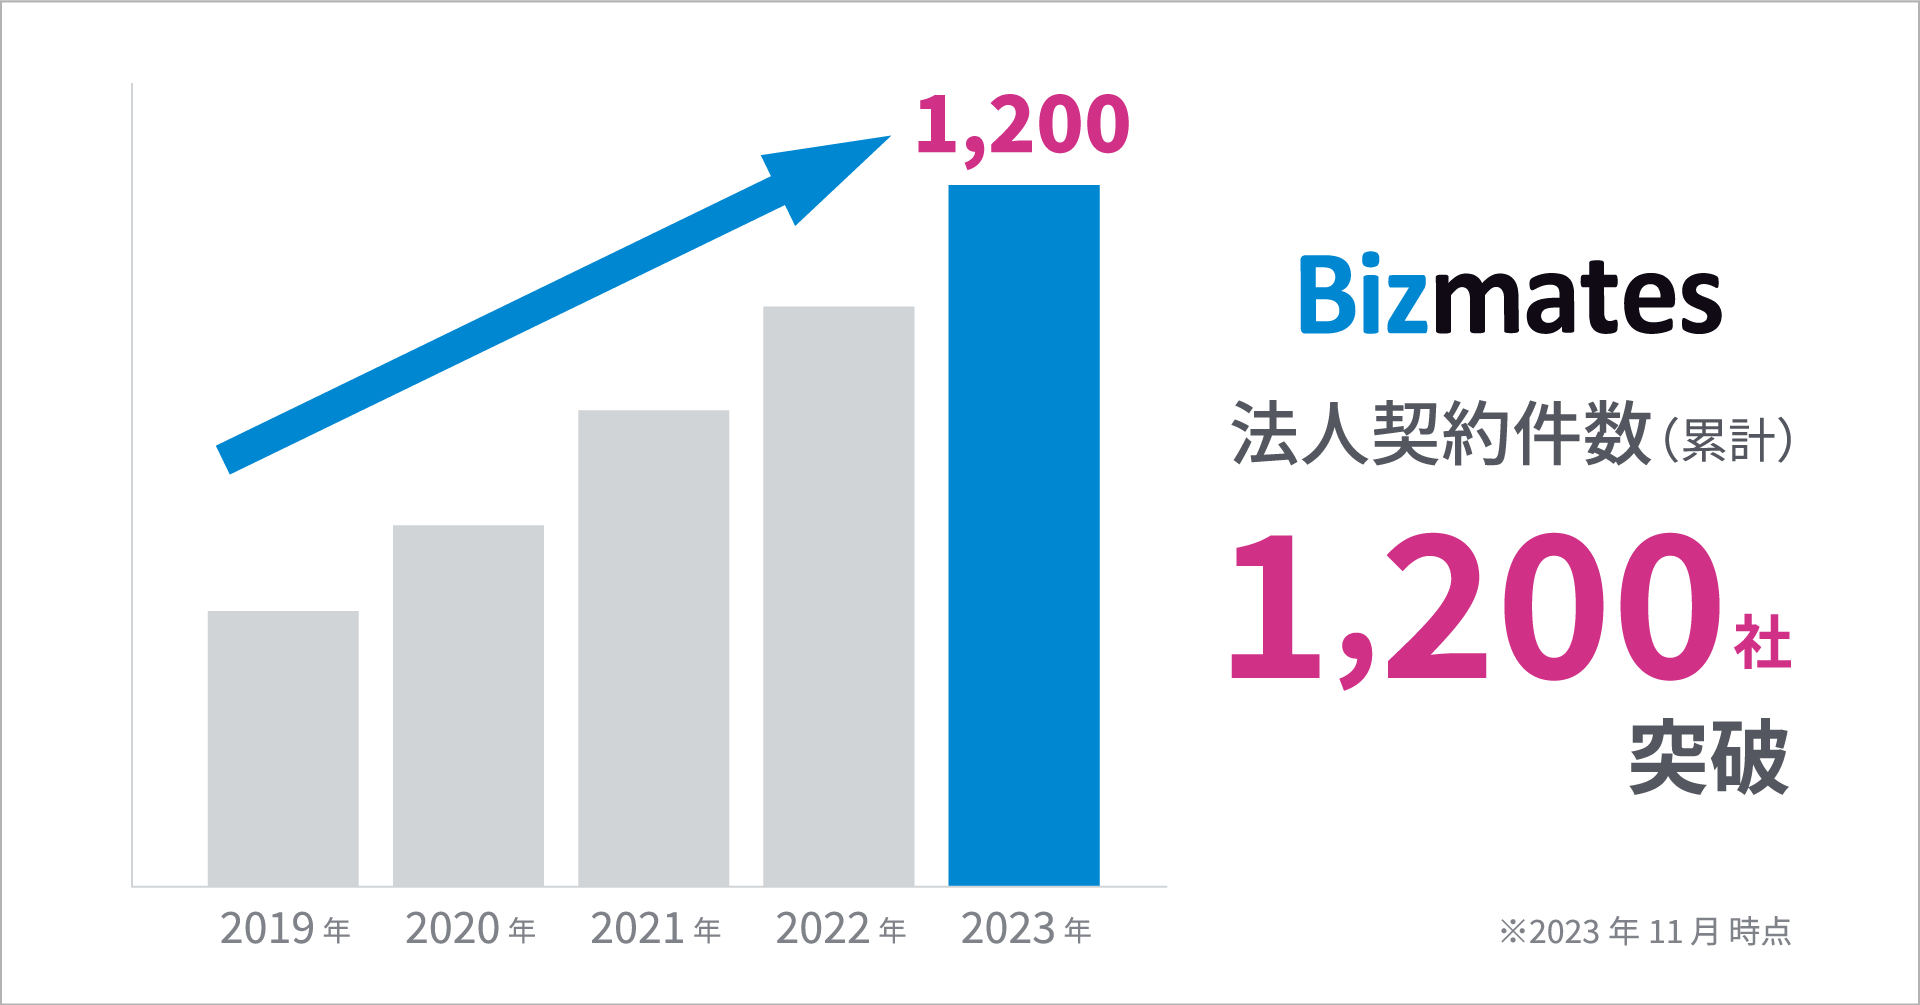 ビジネス特化型オンライン英会話「Bizmates」 導入企業社数が累計1,200社を突破！   〜インバウンドの増加に伴い、グローバルサービス向上を目指す業界からの需要拡大が牽引〜